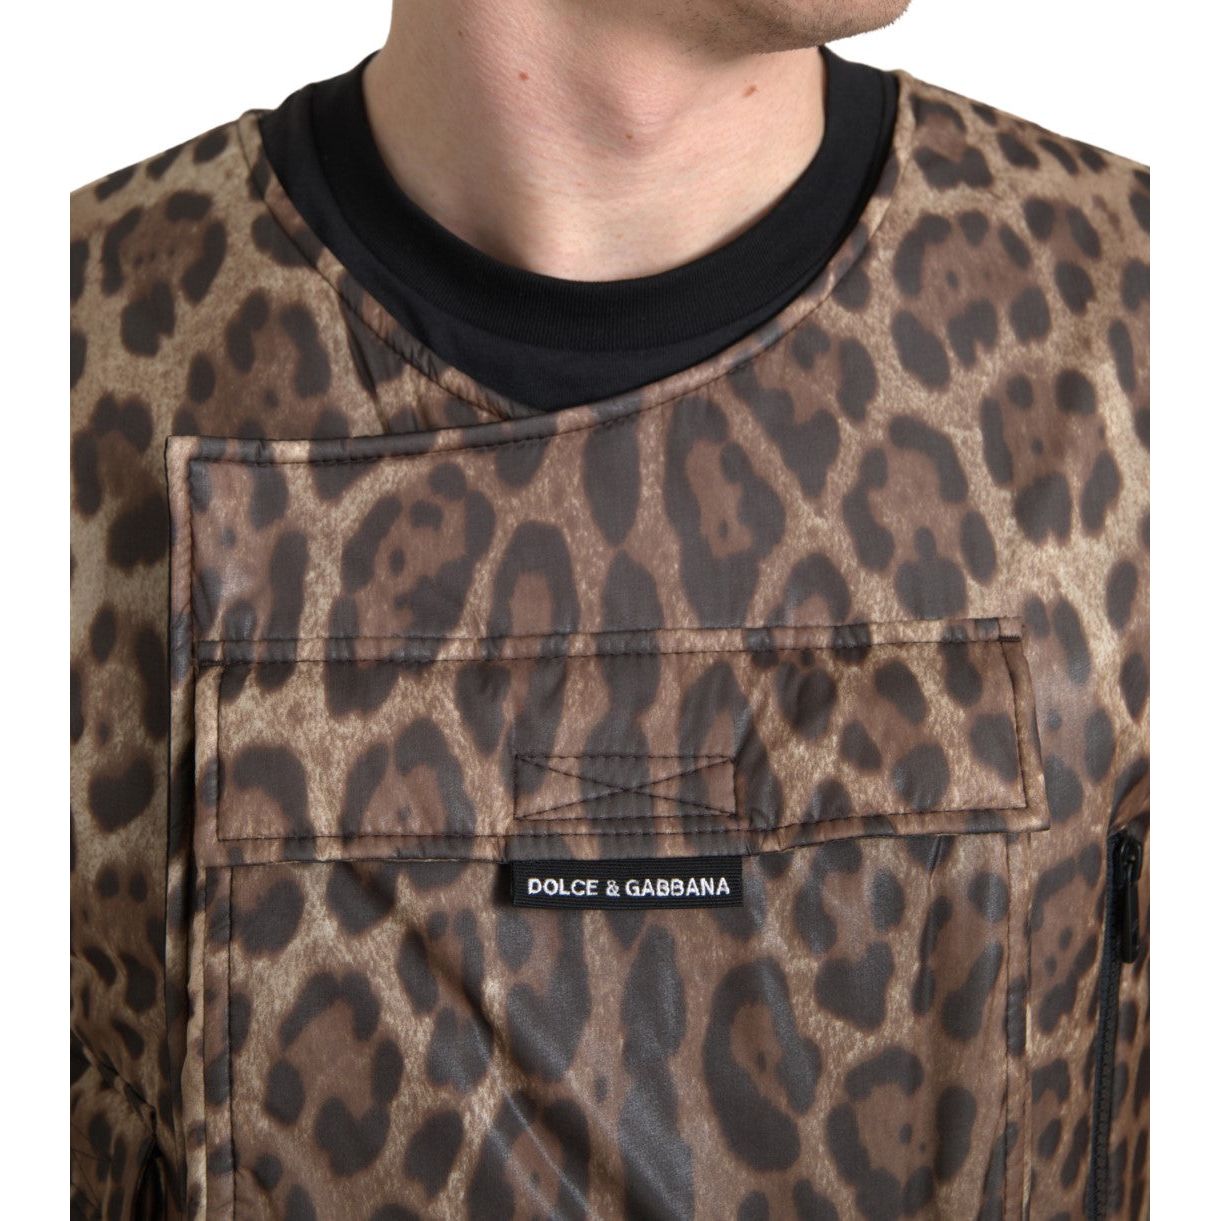 Dolce & Gabbana Silk Leopard Vest Exclusive Sportswear brown-leopard-silk-sleeveless-sportswear 465A7332-Large-0d674ef0-a84.jpg